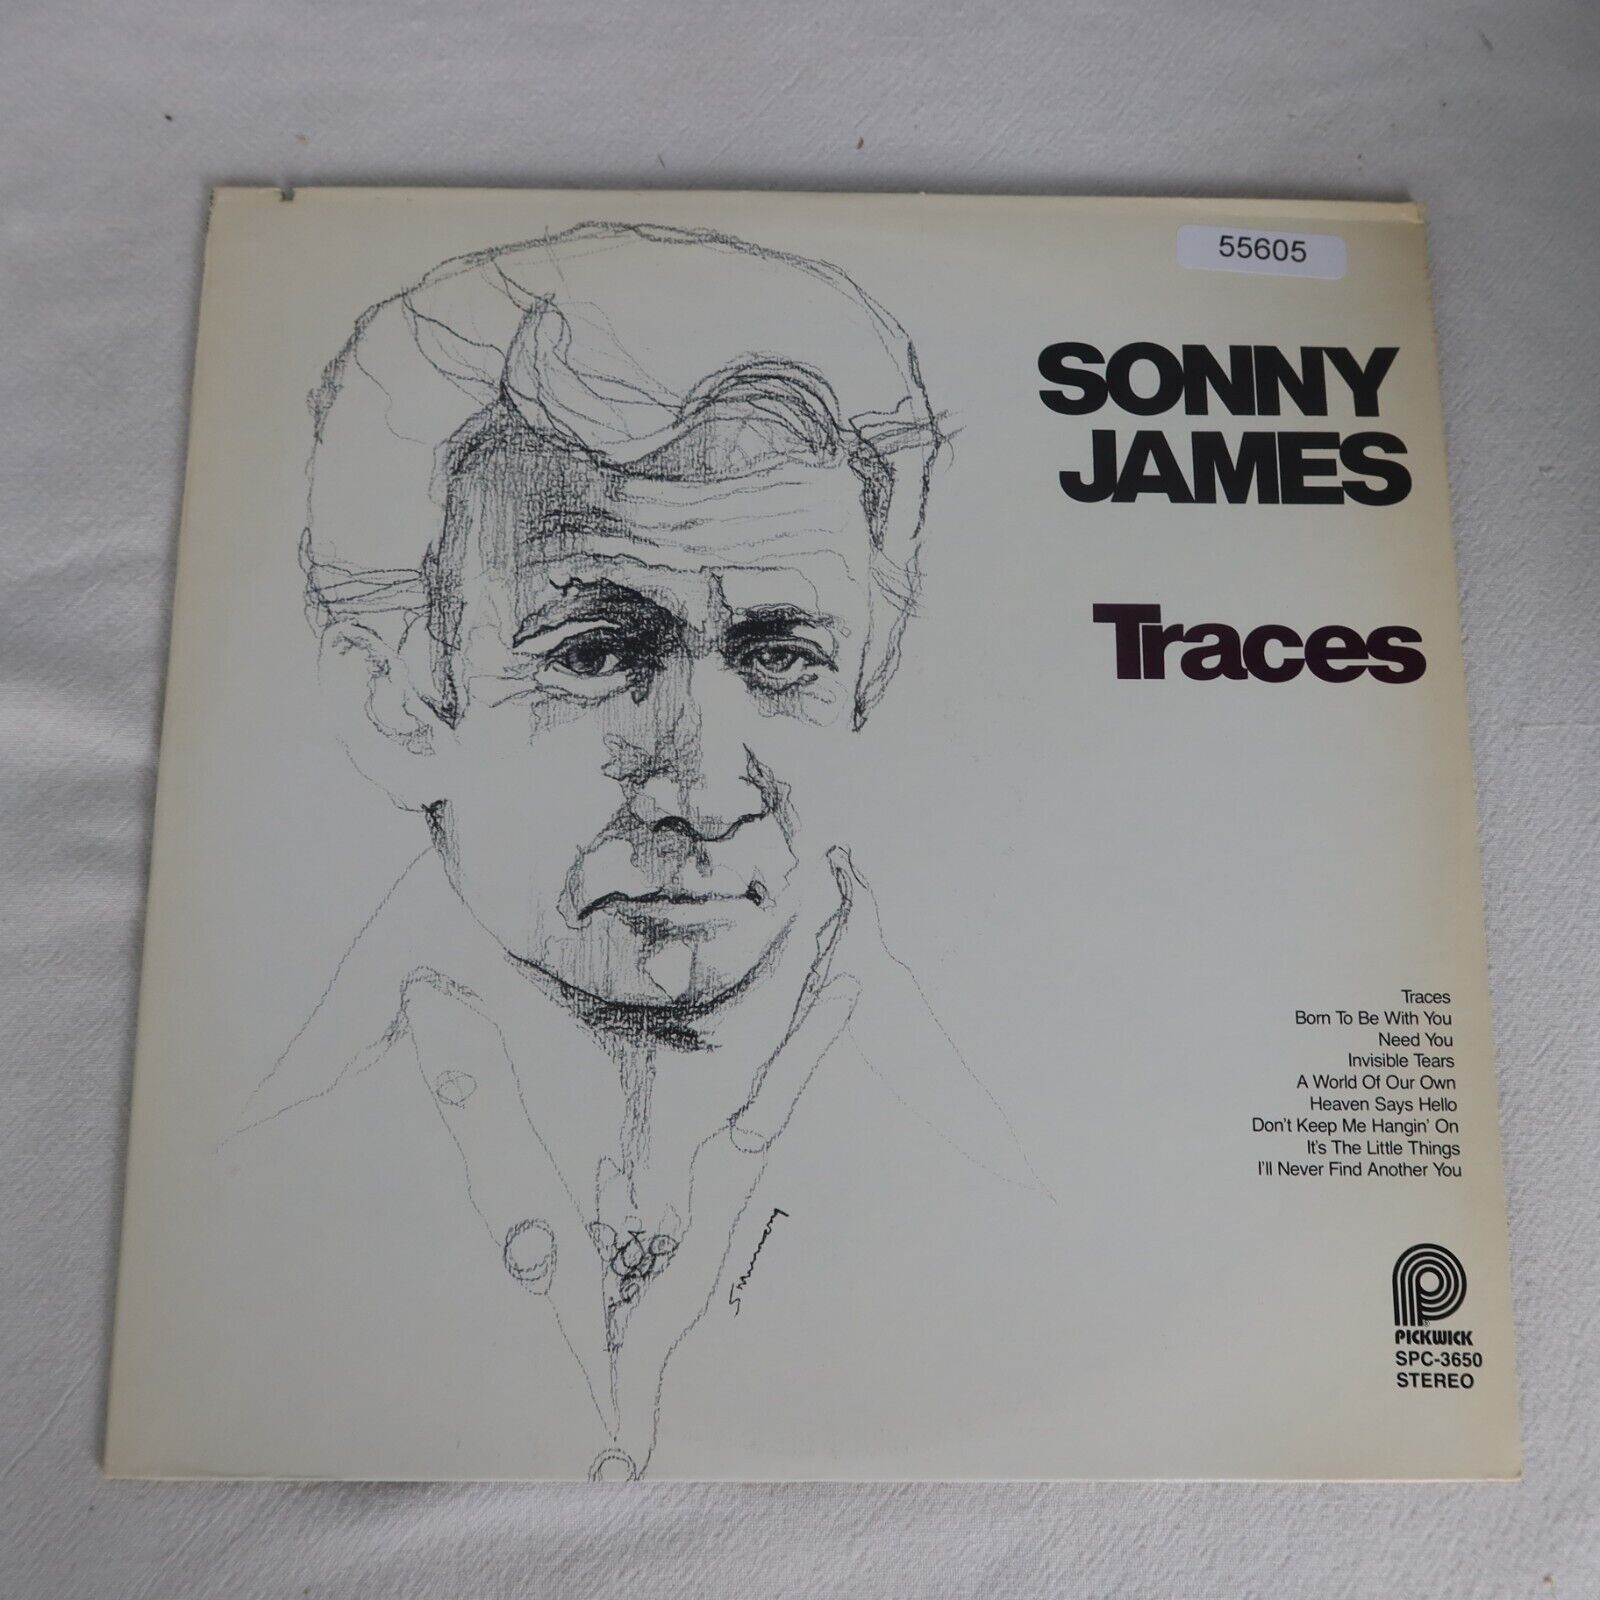 Sonny James Traces LP Vinyl Record Album